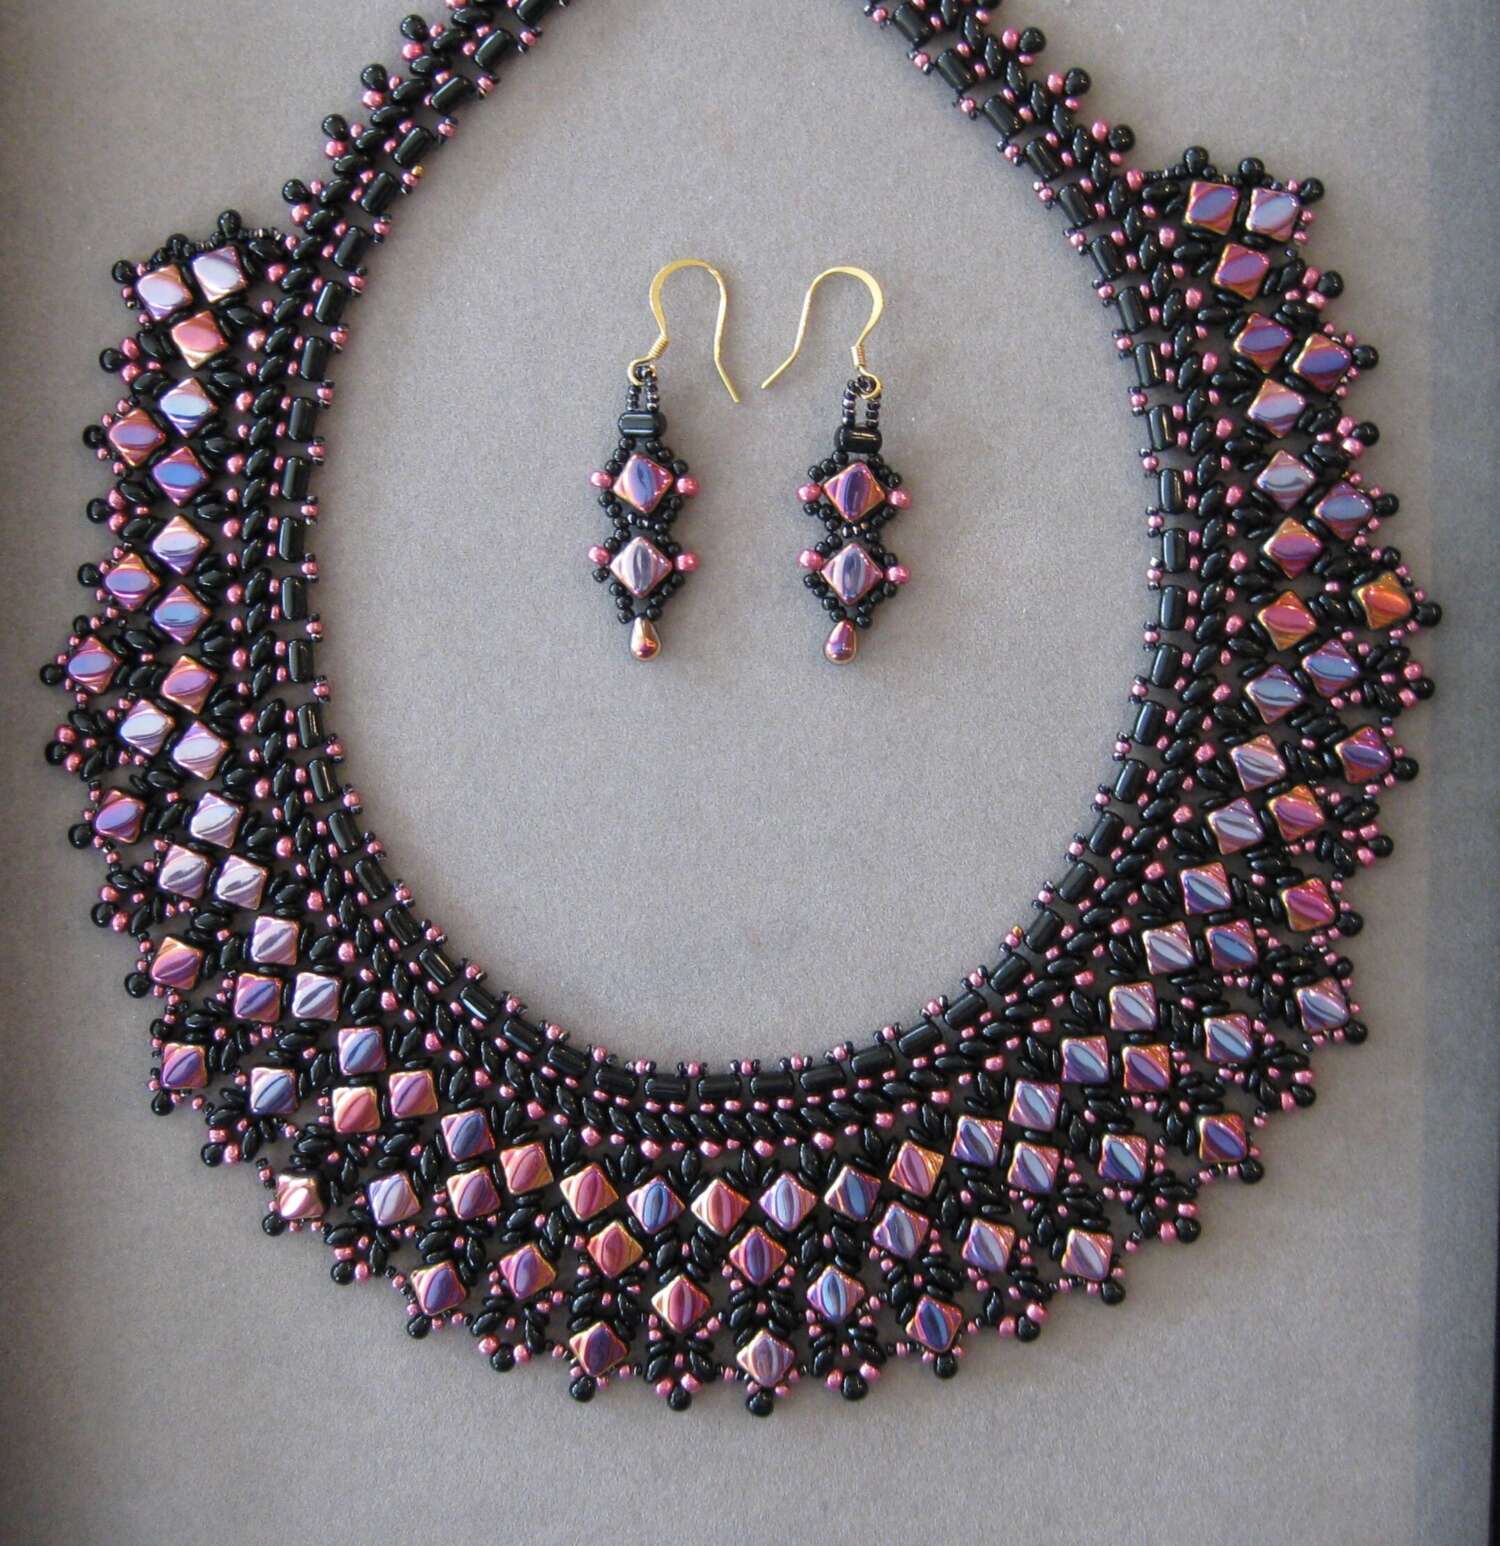 Pam's Unique Jewelry - The Pinehills